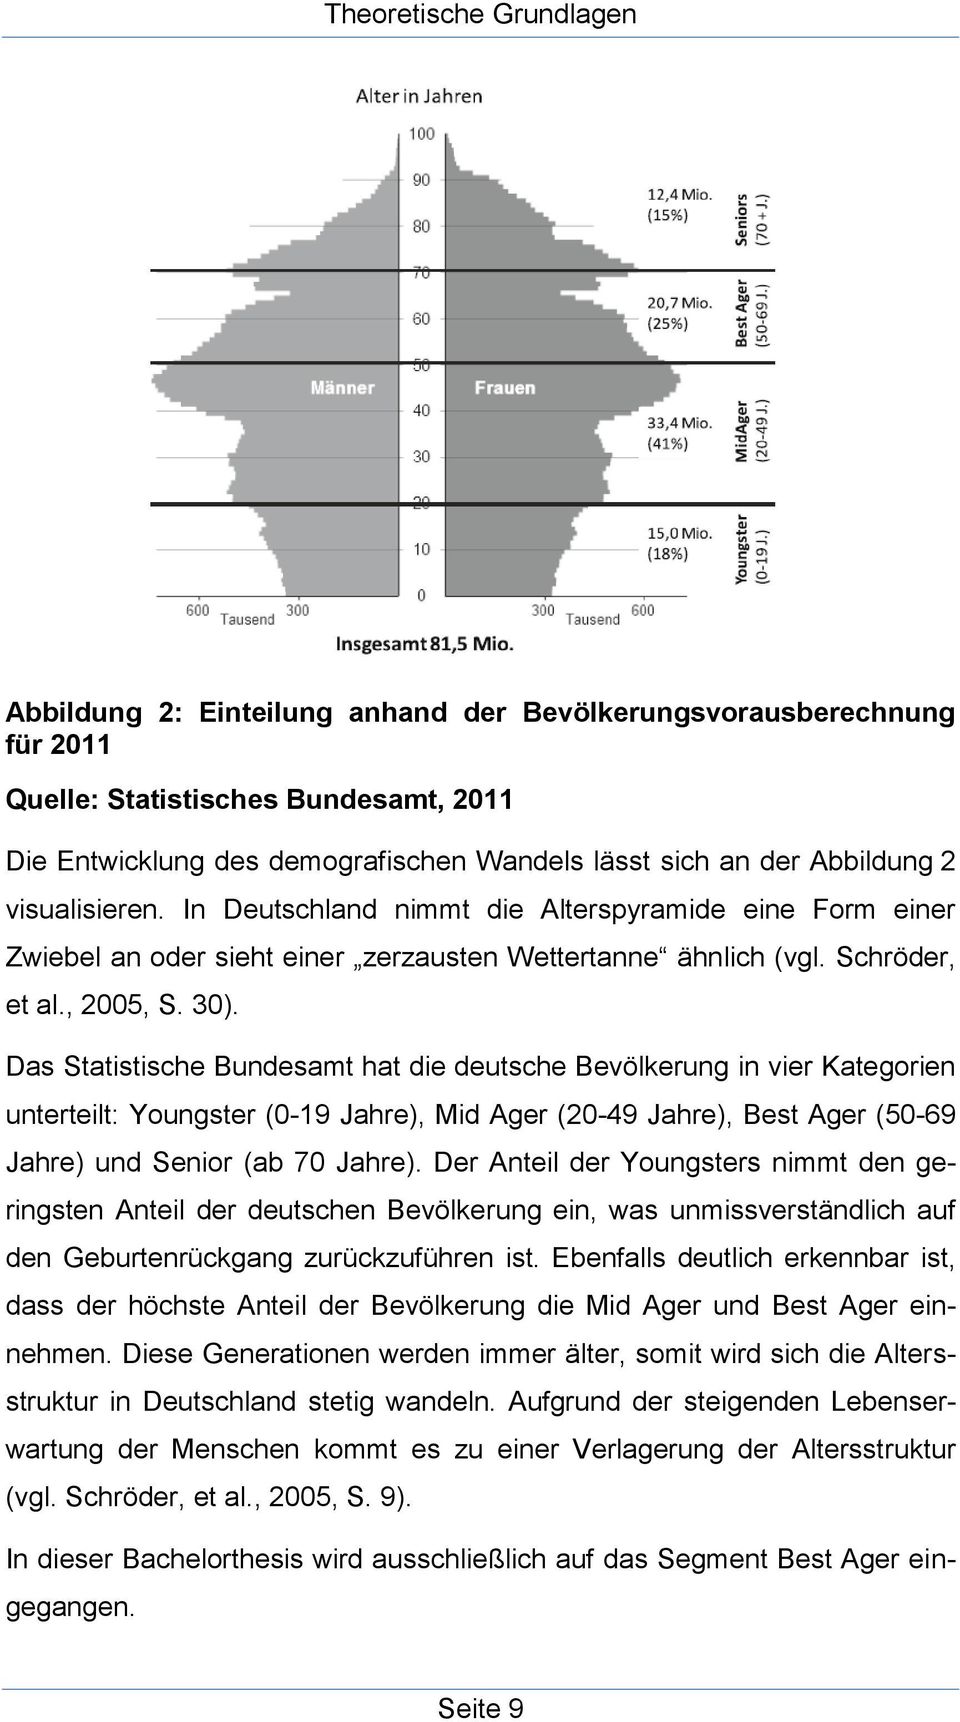 Das Statistische Bundesamt hat die deutsche Bevölkerung in vier Kategorien unterteilt: Youngster (0-19 Jahre), Mid Ager (20-49 Jahre), Best Ager (50-69 Jahre) und Senior (ab 70 Jahre).